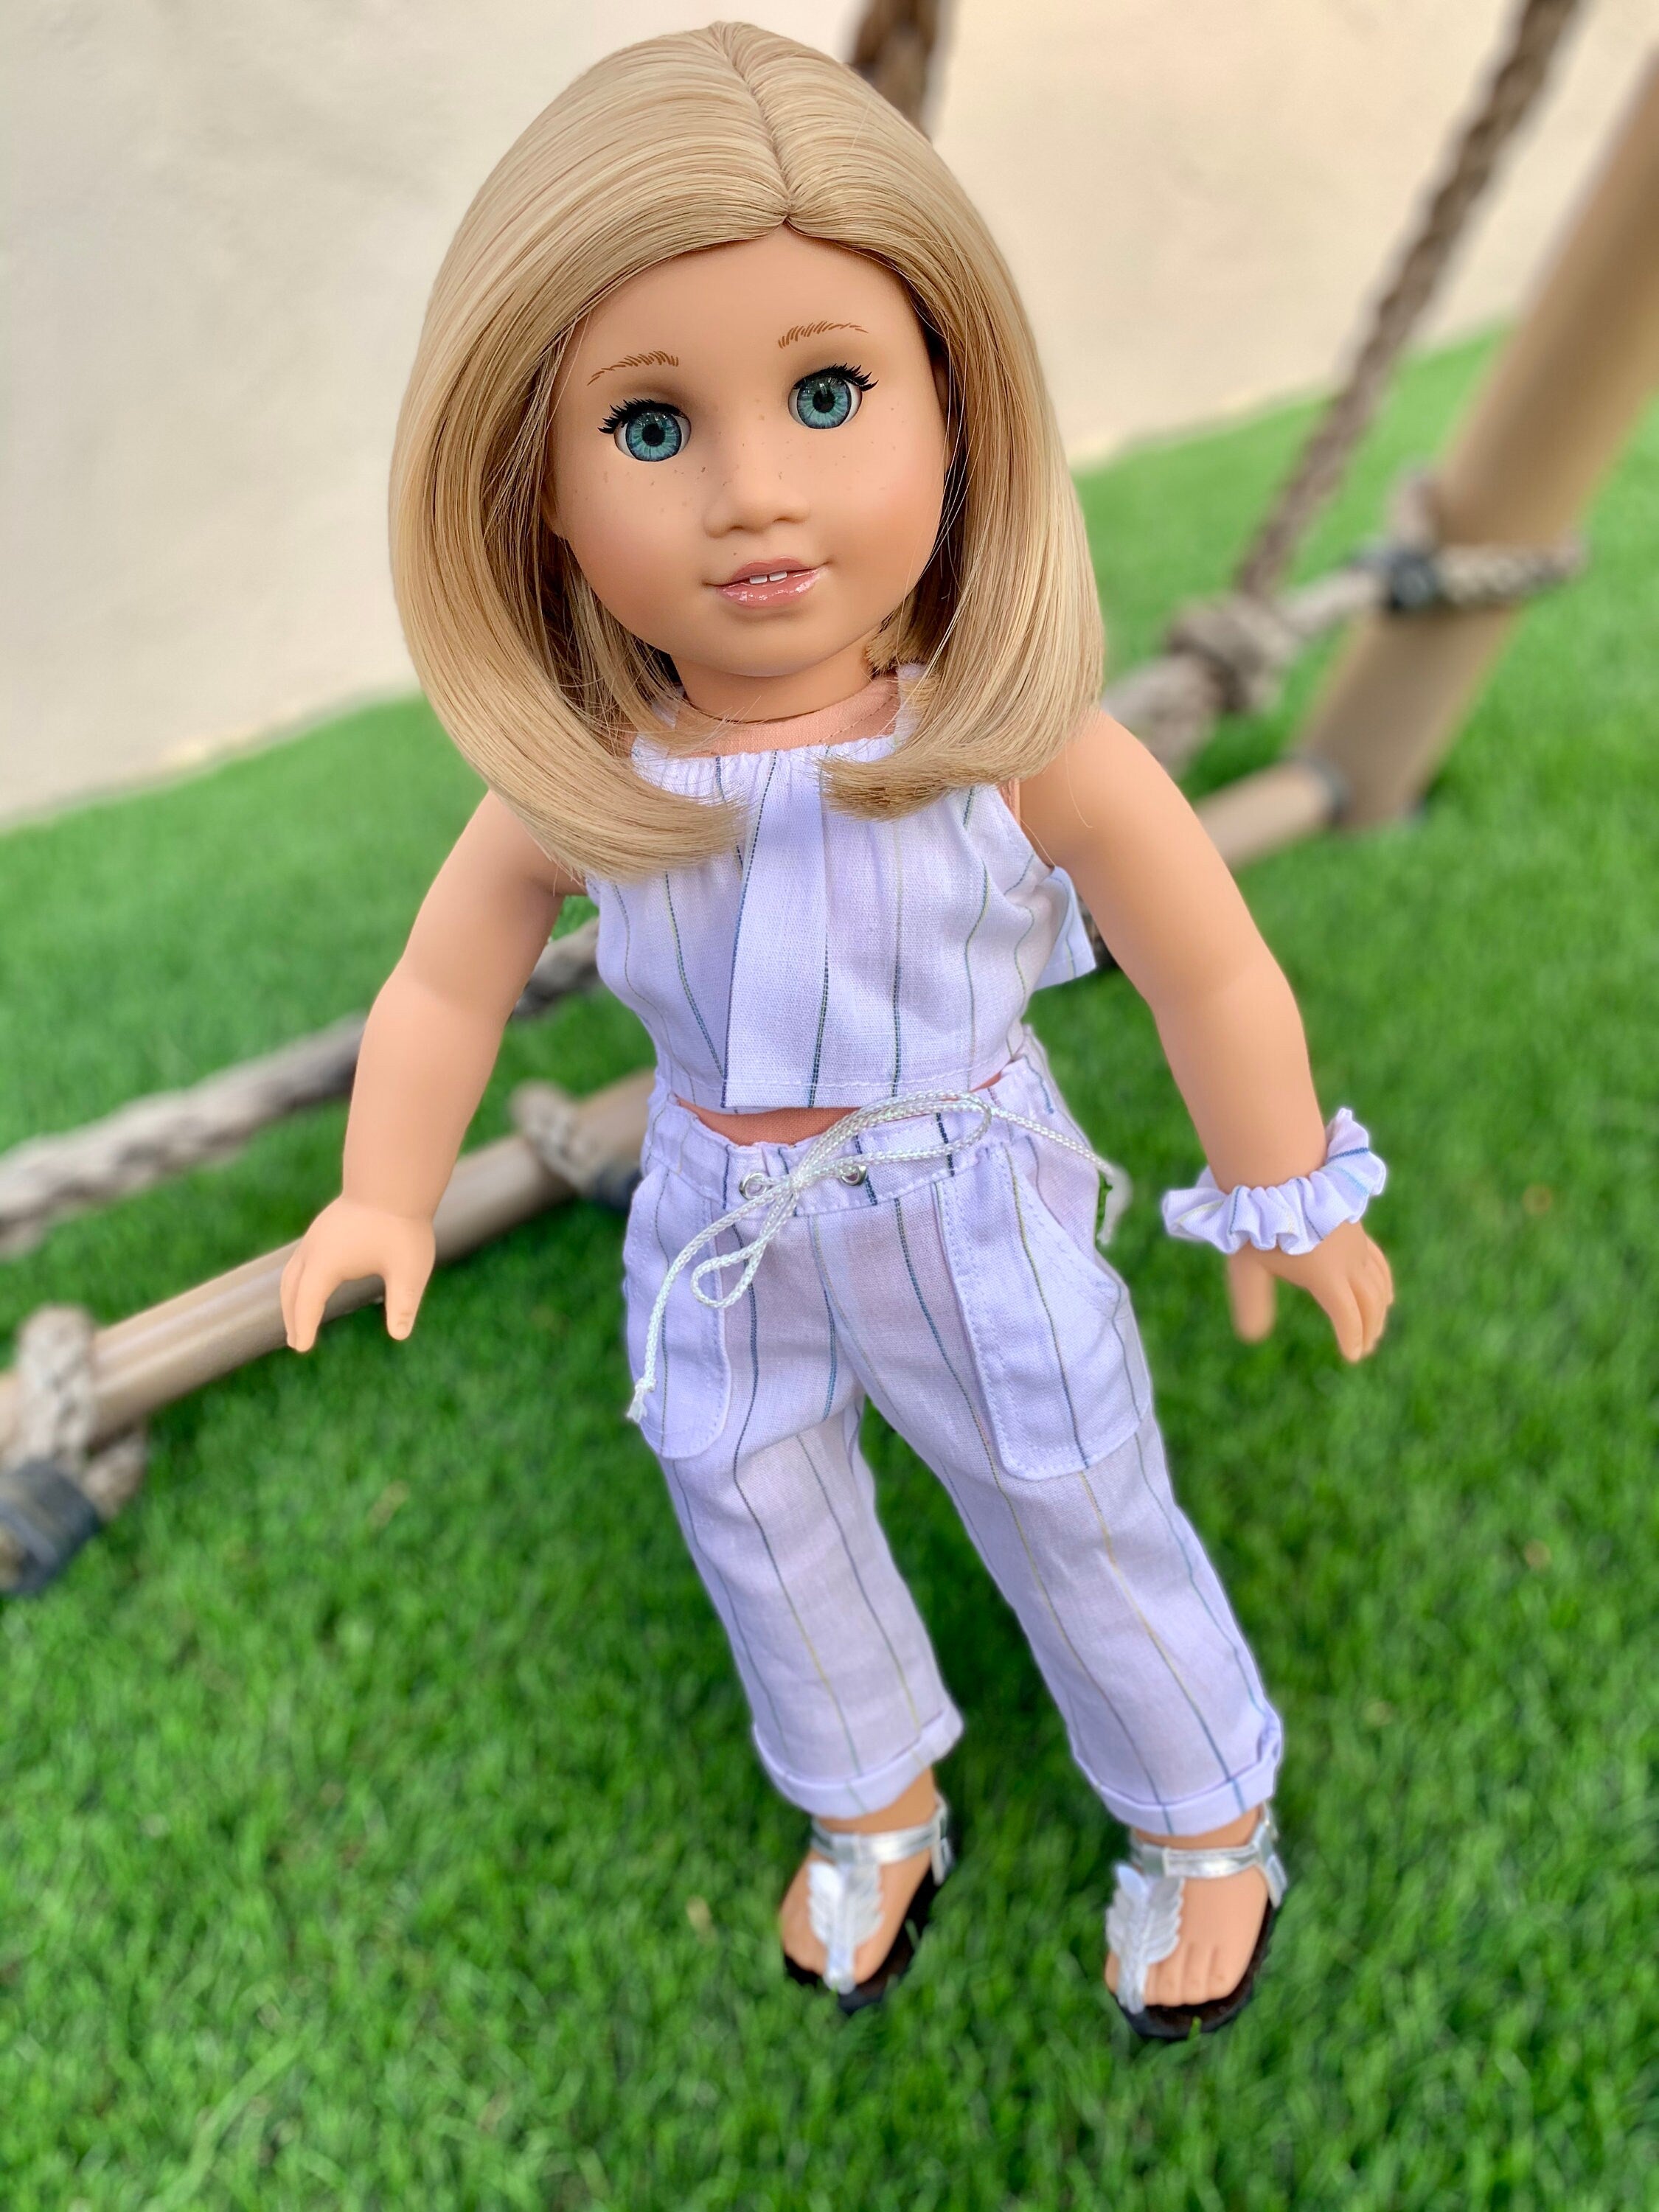 Custom doll wig for 18" American Girl Dolls - Heat Safe - Tangle Resistant - fits 10-11" head size of 18" dolls OG Blythe BJD Gotz bob